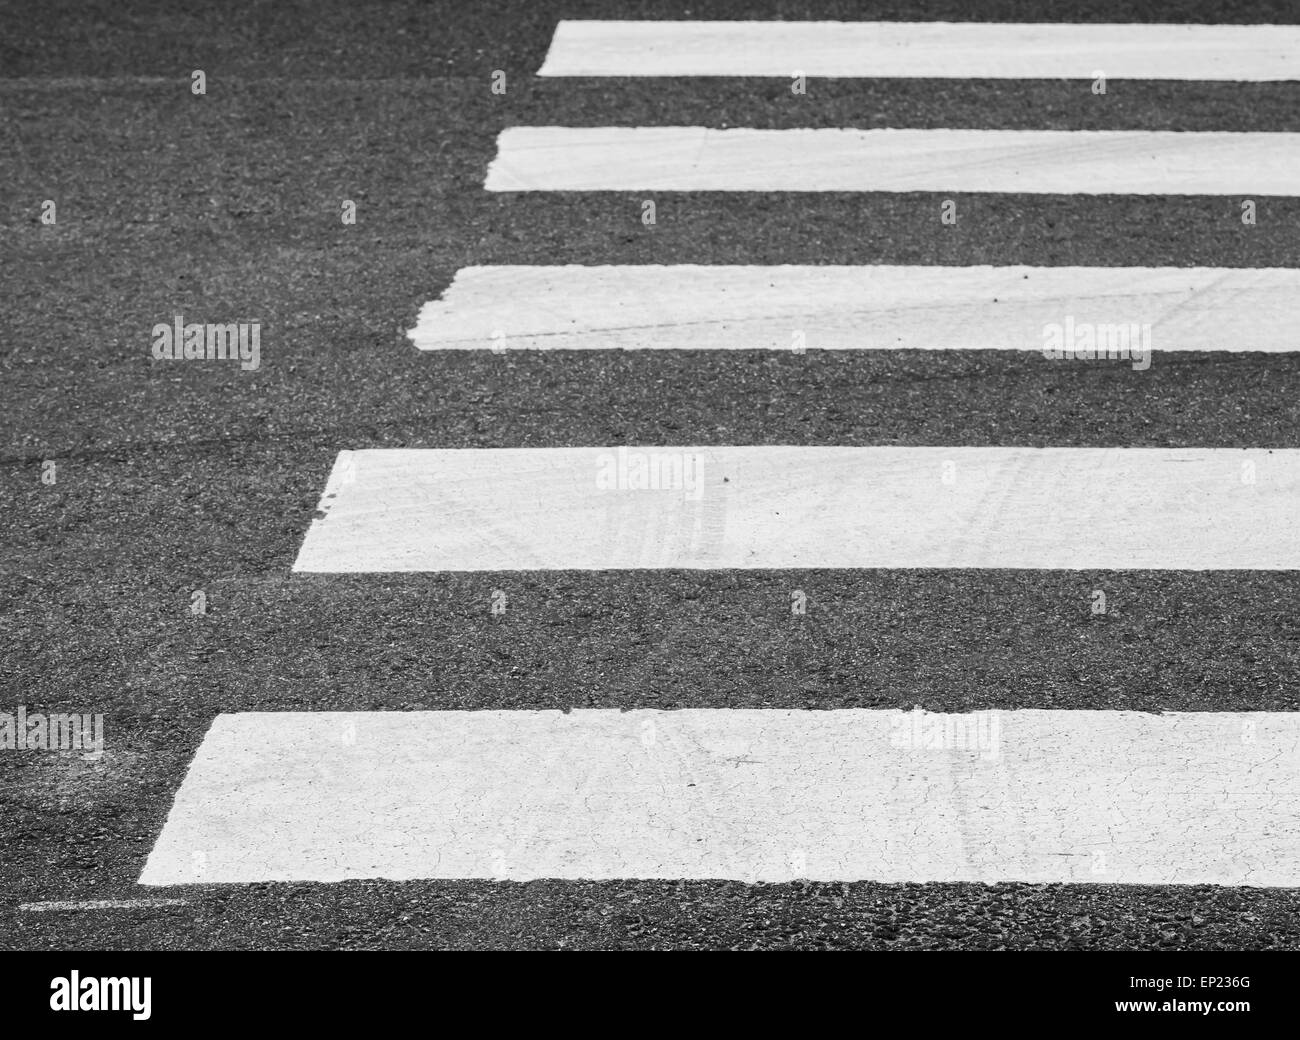 La route d'asphalte de couleur gris foncé avec passage pour piétons, marquage routier, selective focus avec DOF peu profondes Banque D'Images